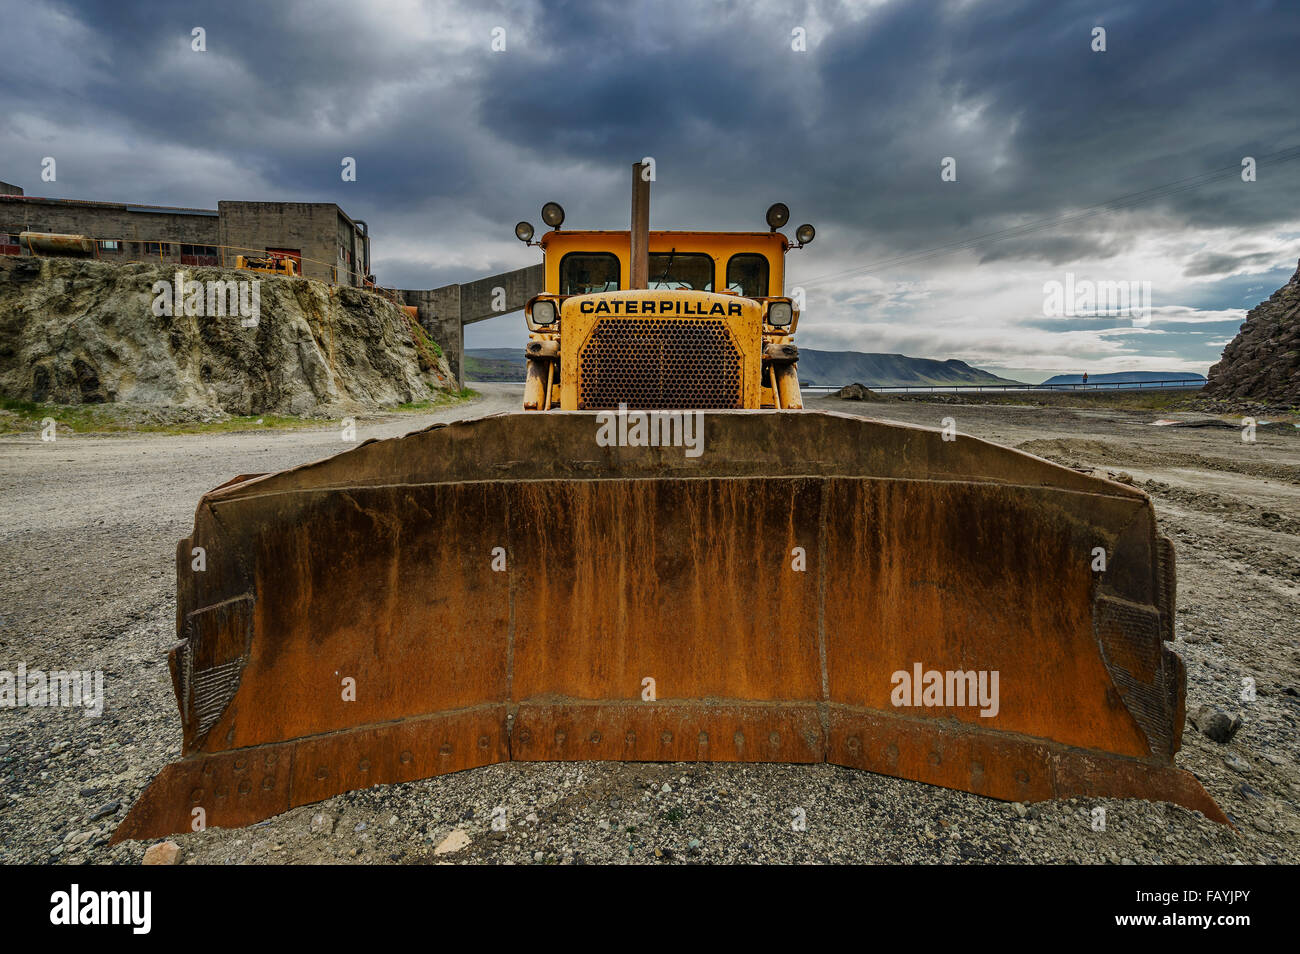 Vue de face d'un bulldozer dans une carrière, Hvalfjordur, Islande Banque D'Images